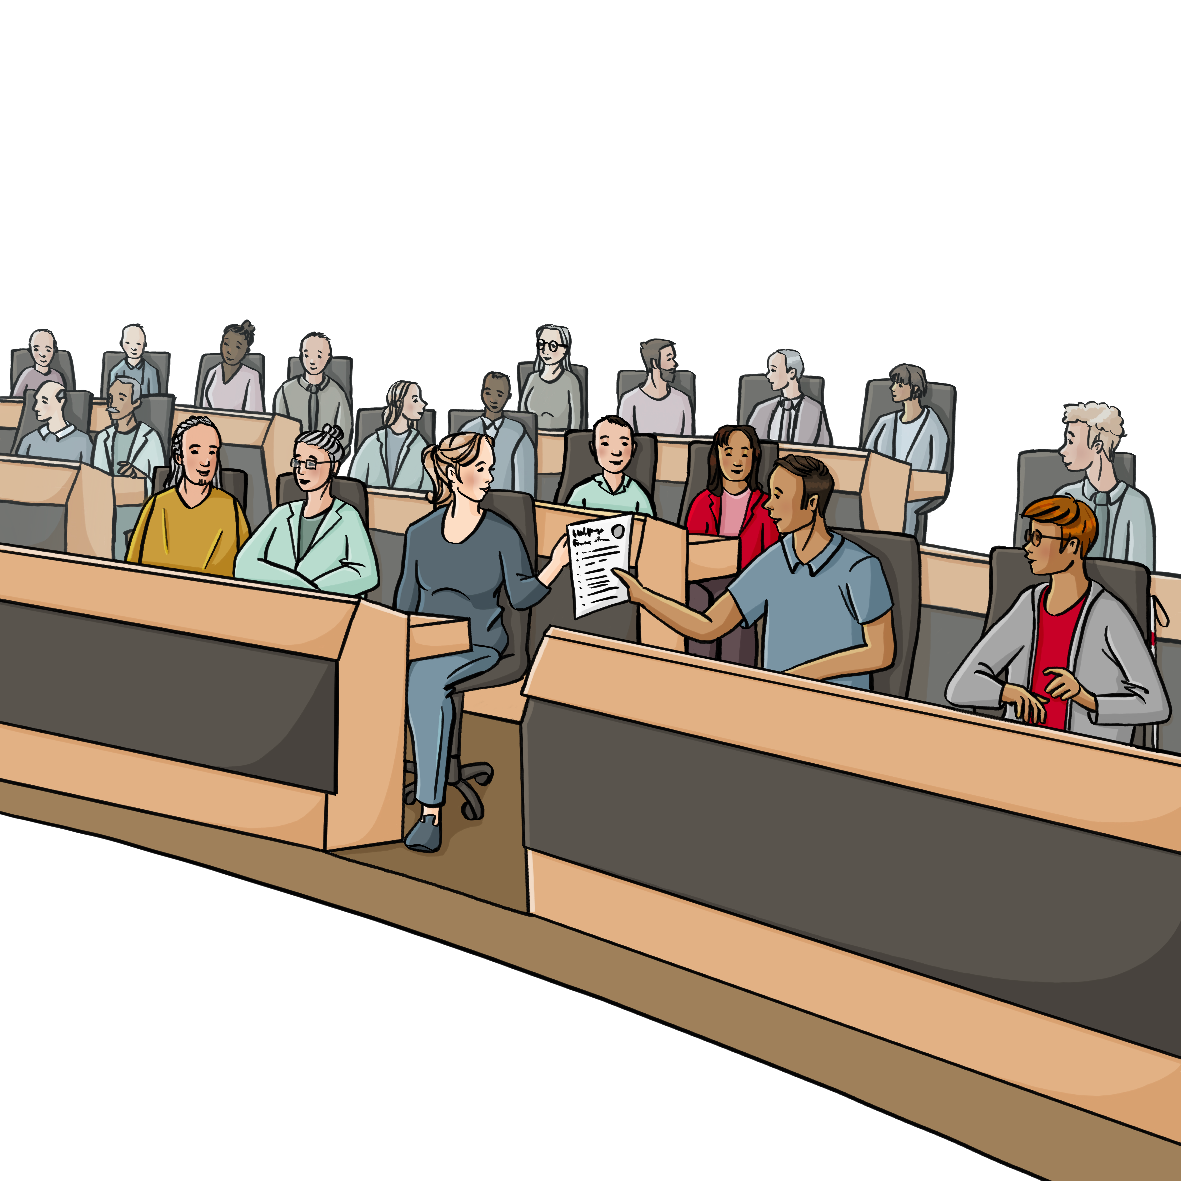 Menschen in förmlicher Kleidung sitzen in halbrund angeordneten Tischreihen. In der vordersten Reihe gibt ein Mann einen Zettel an eine Frau.